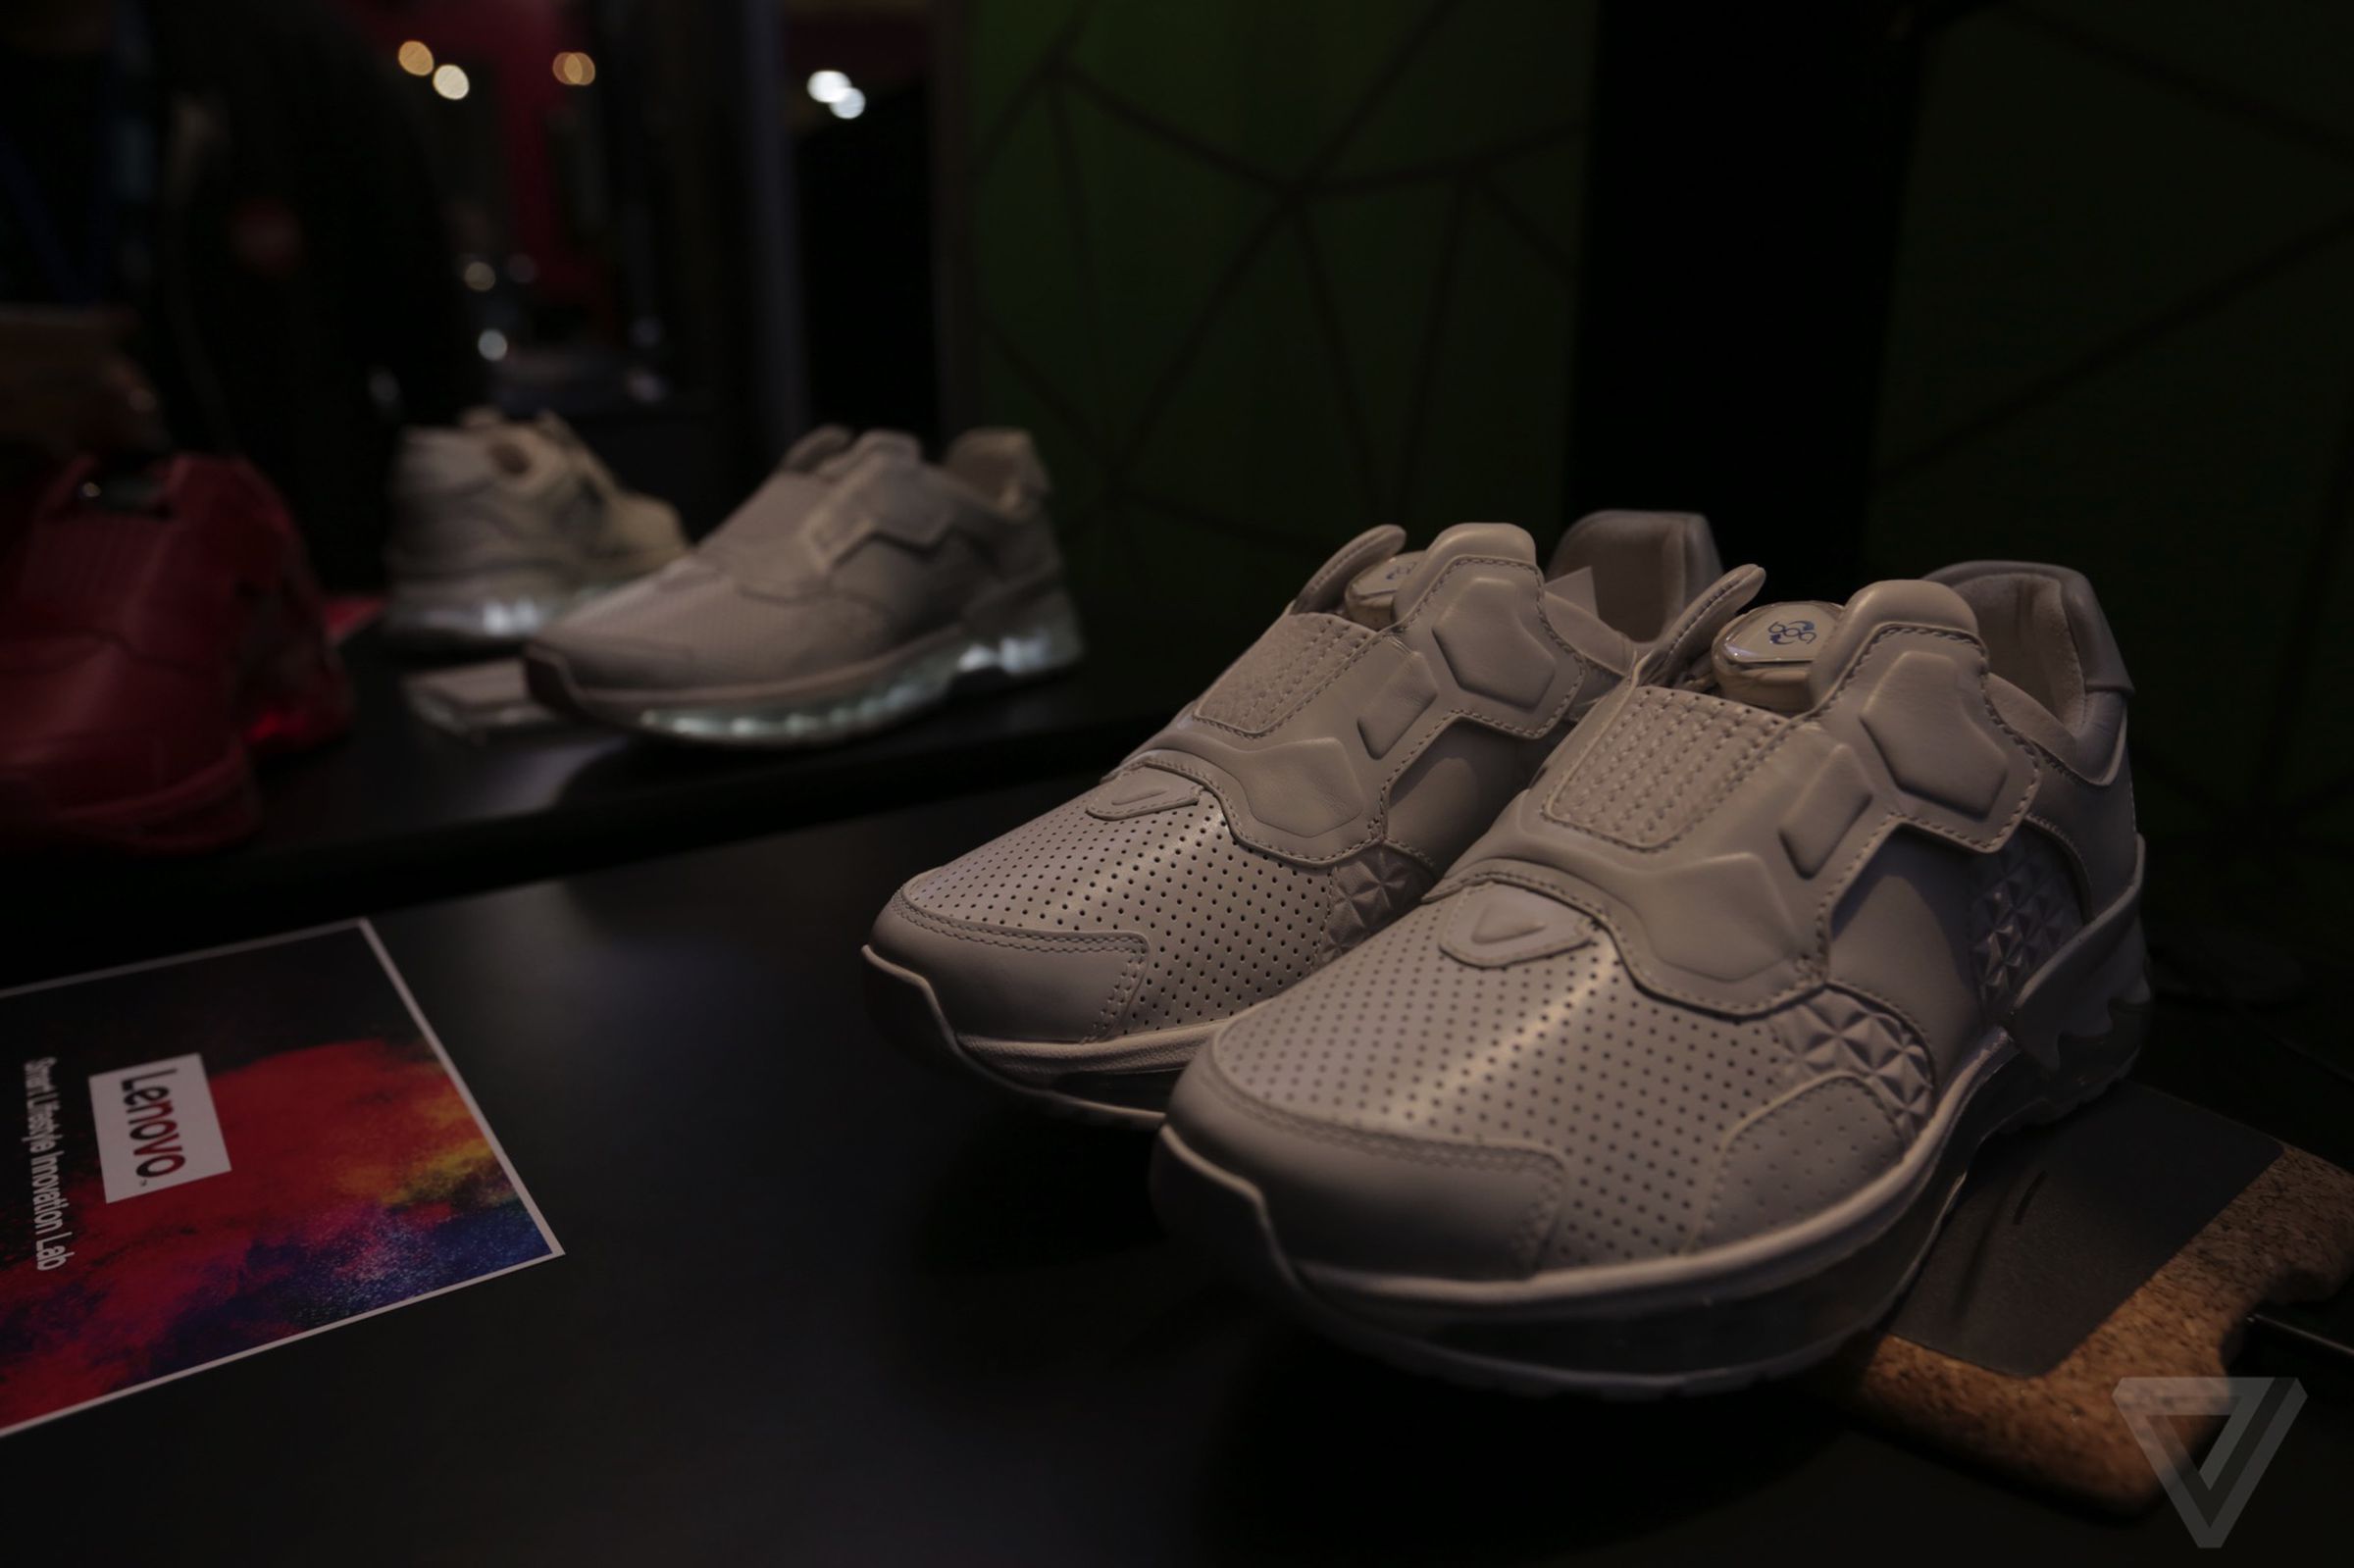 Lenovo's smart running shoe at Tech World 2016